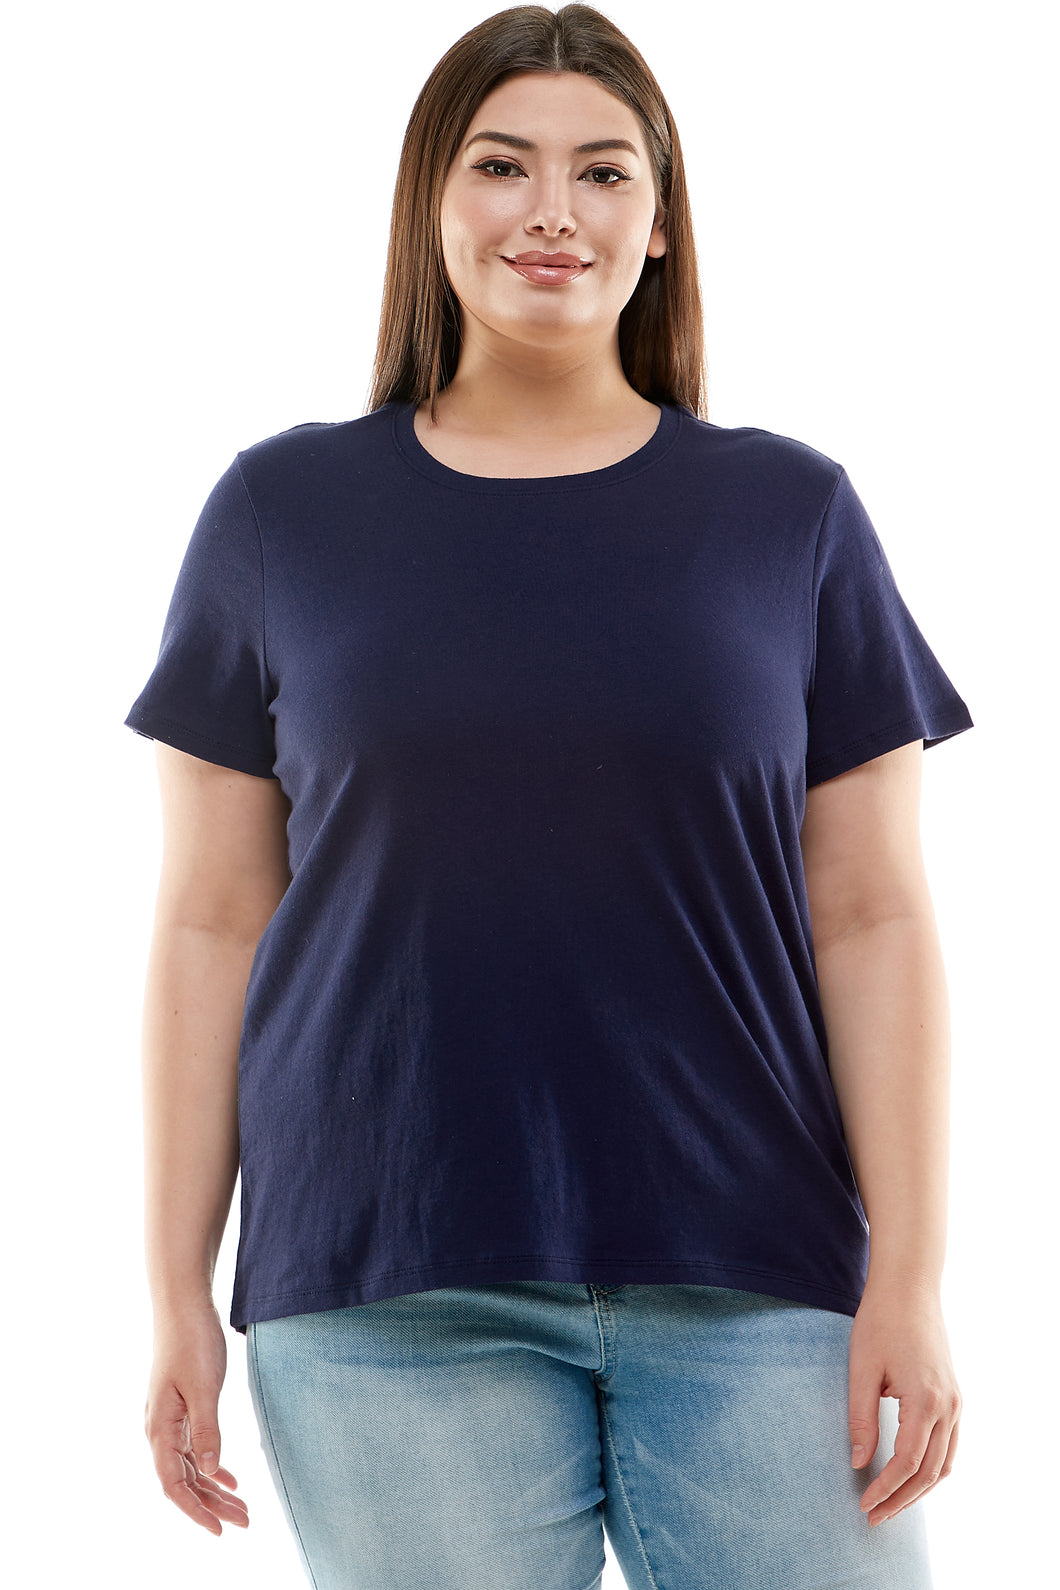 Plus Size Basic Short Sleeve Tee Shirt | Navy